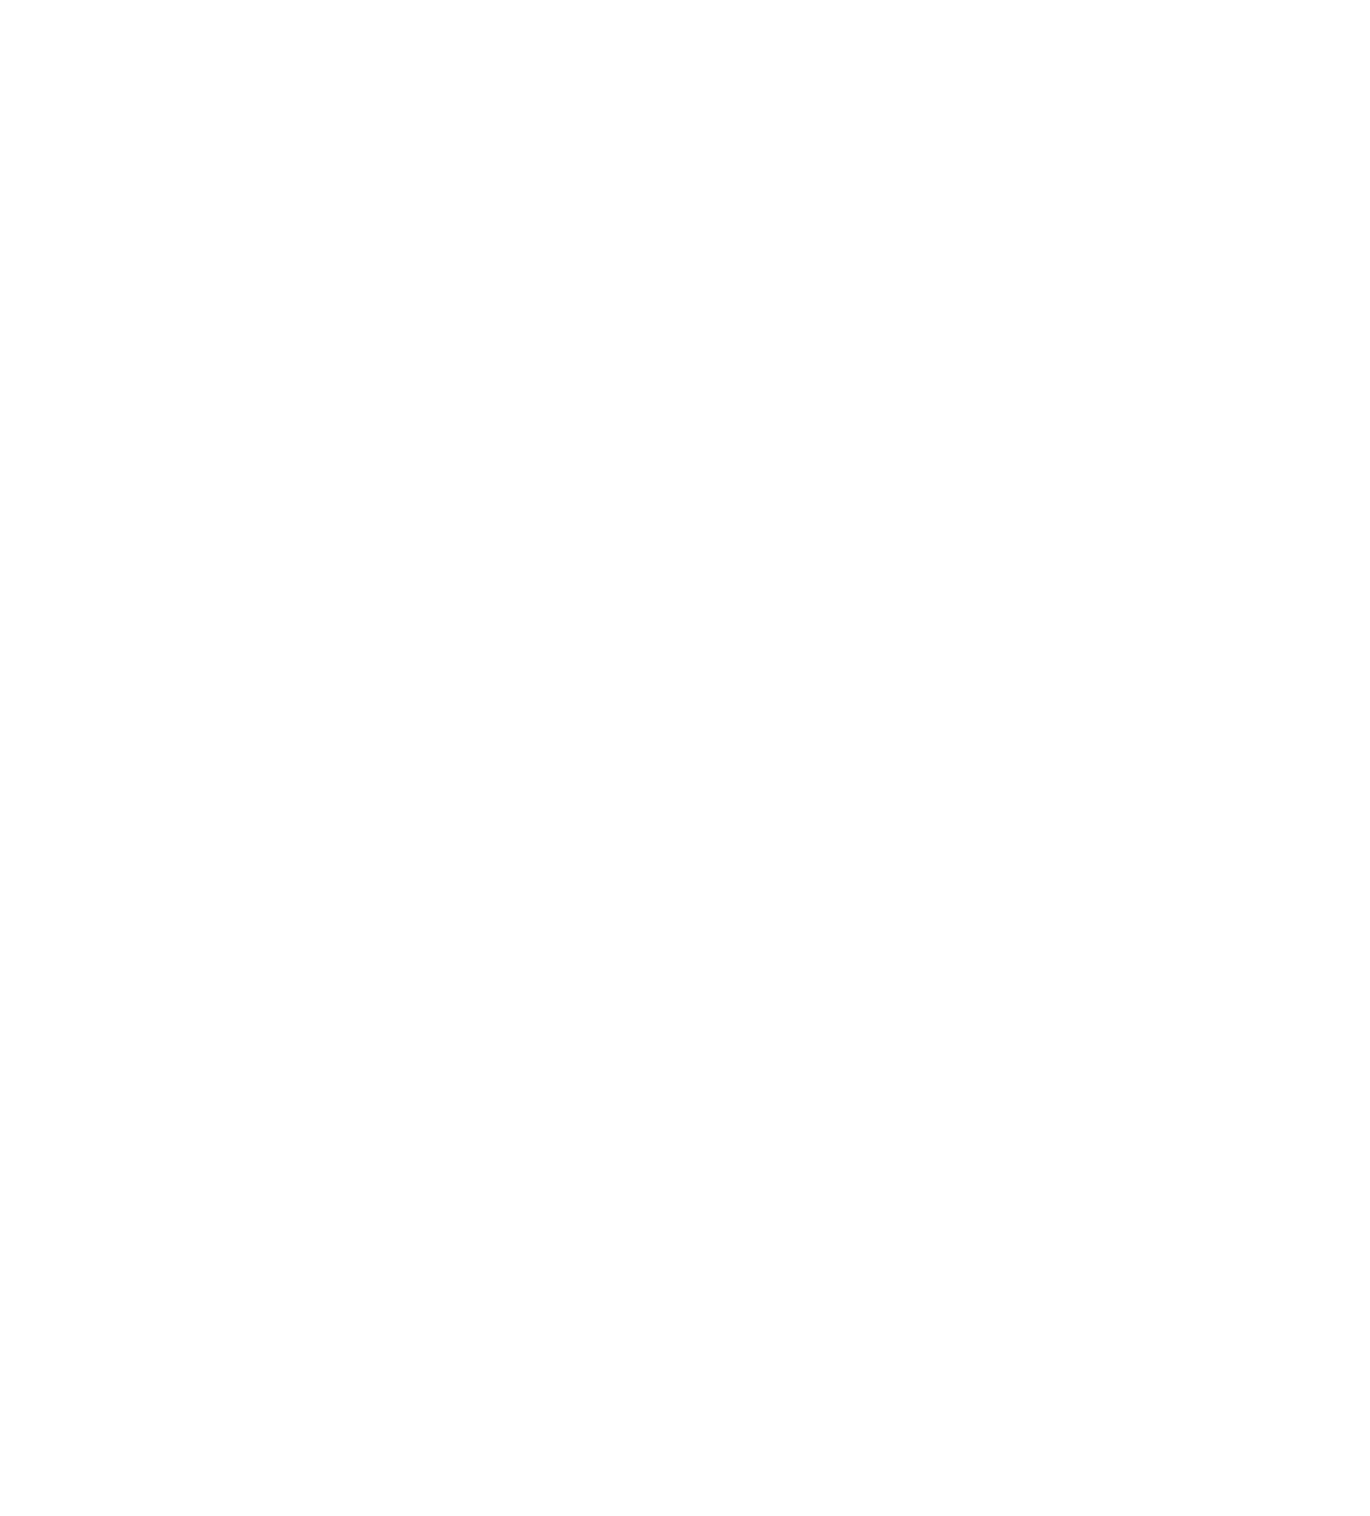 Safran logo pour fonds sombres (PNG transparent)